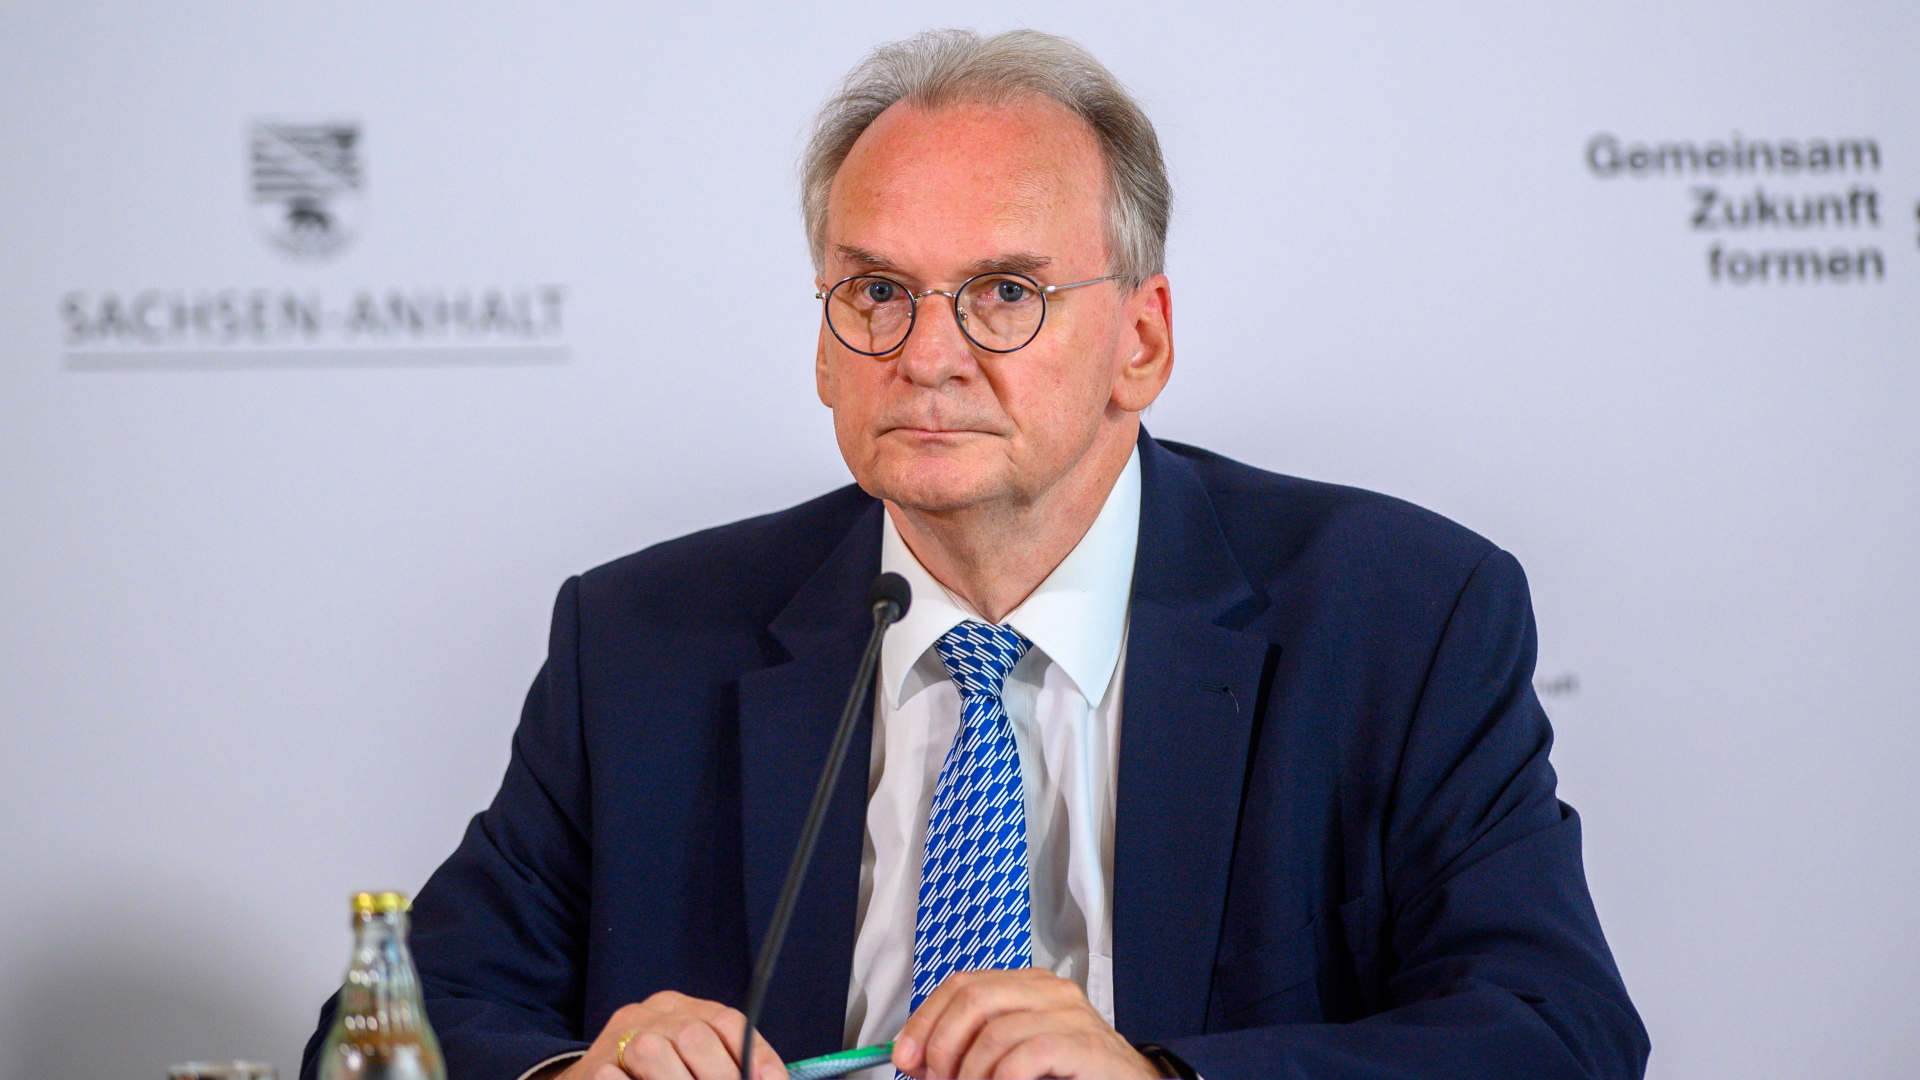 Ministerpräsident von Sachsen-Anhalt Reiner Haseloff | dpa